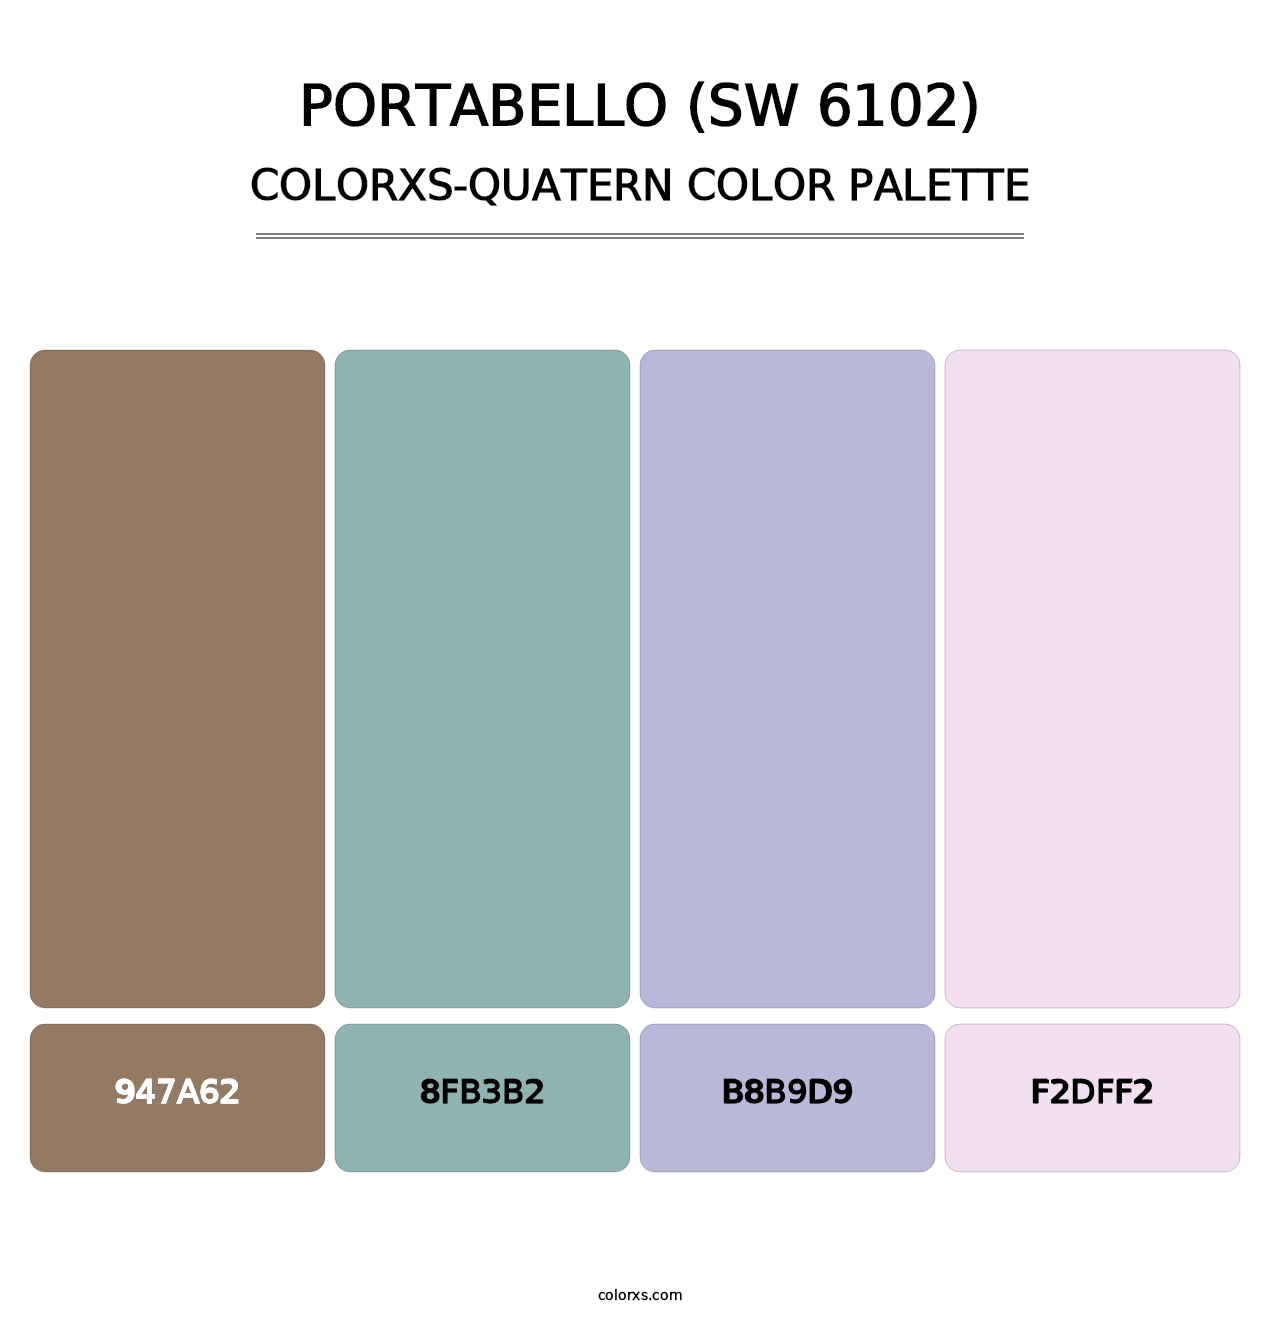 Portabello (SW 6102) - Colorxs Quatern Palette